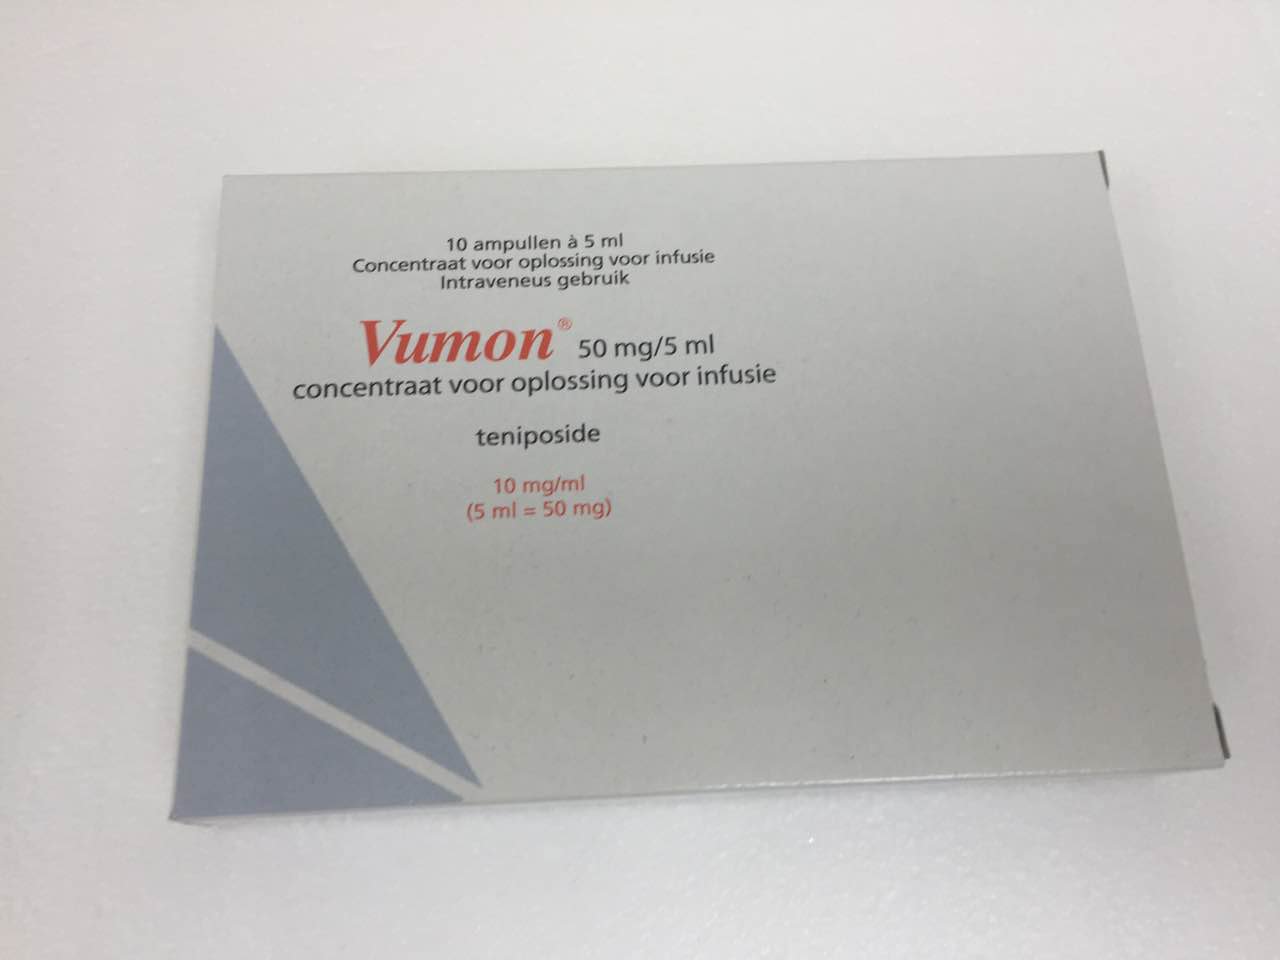  Vumon(替尼泊苷注射液)